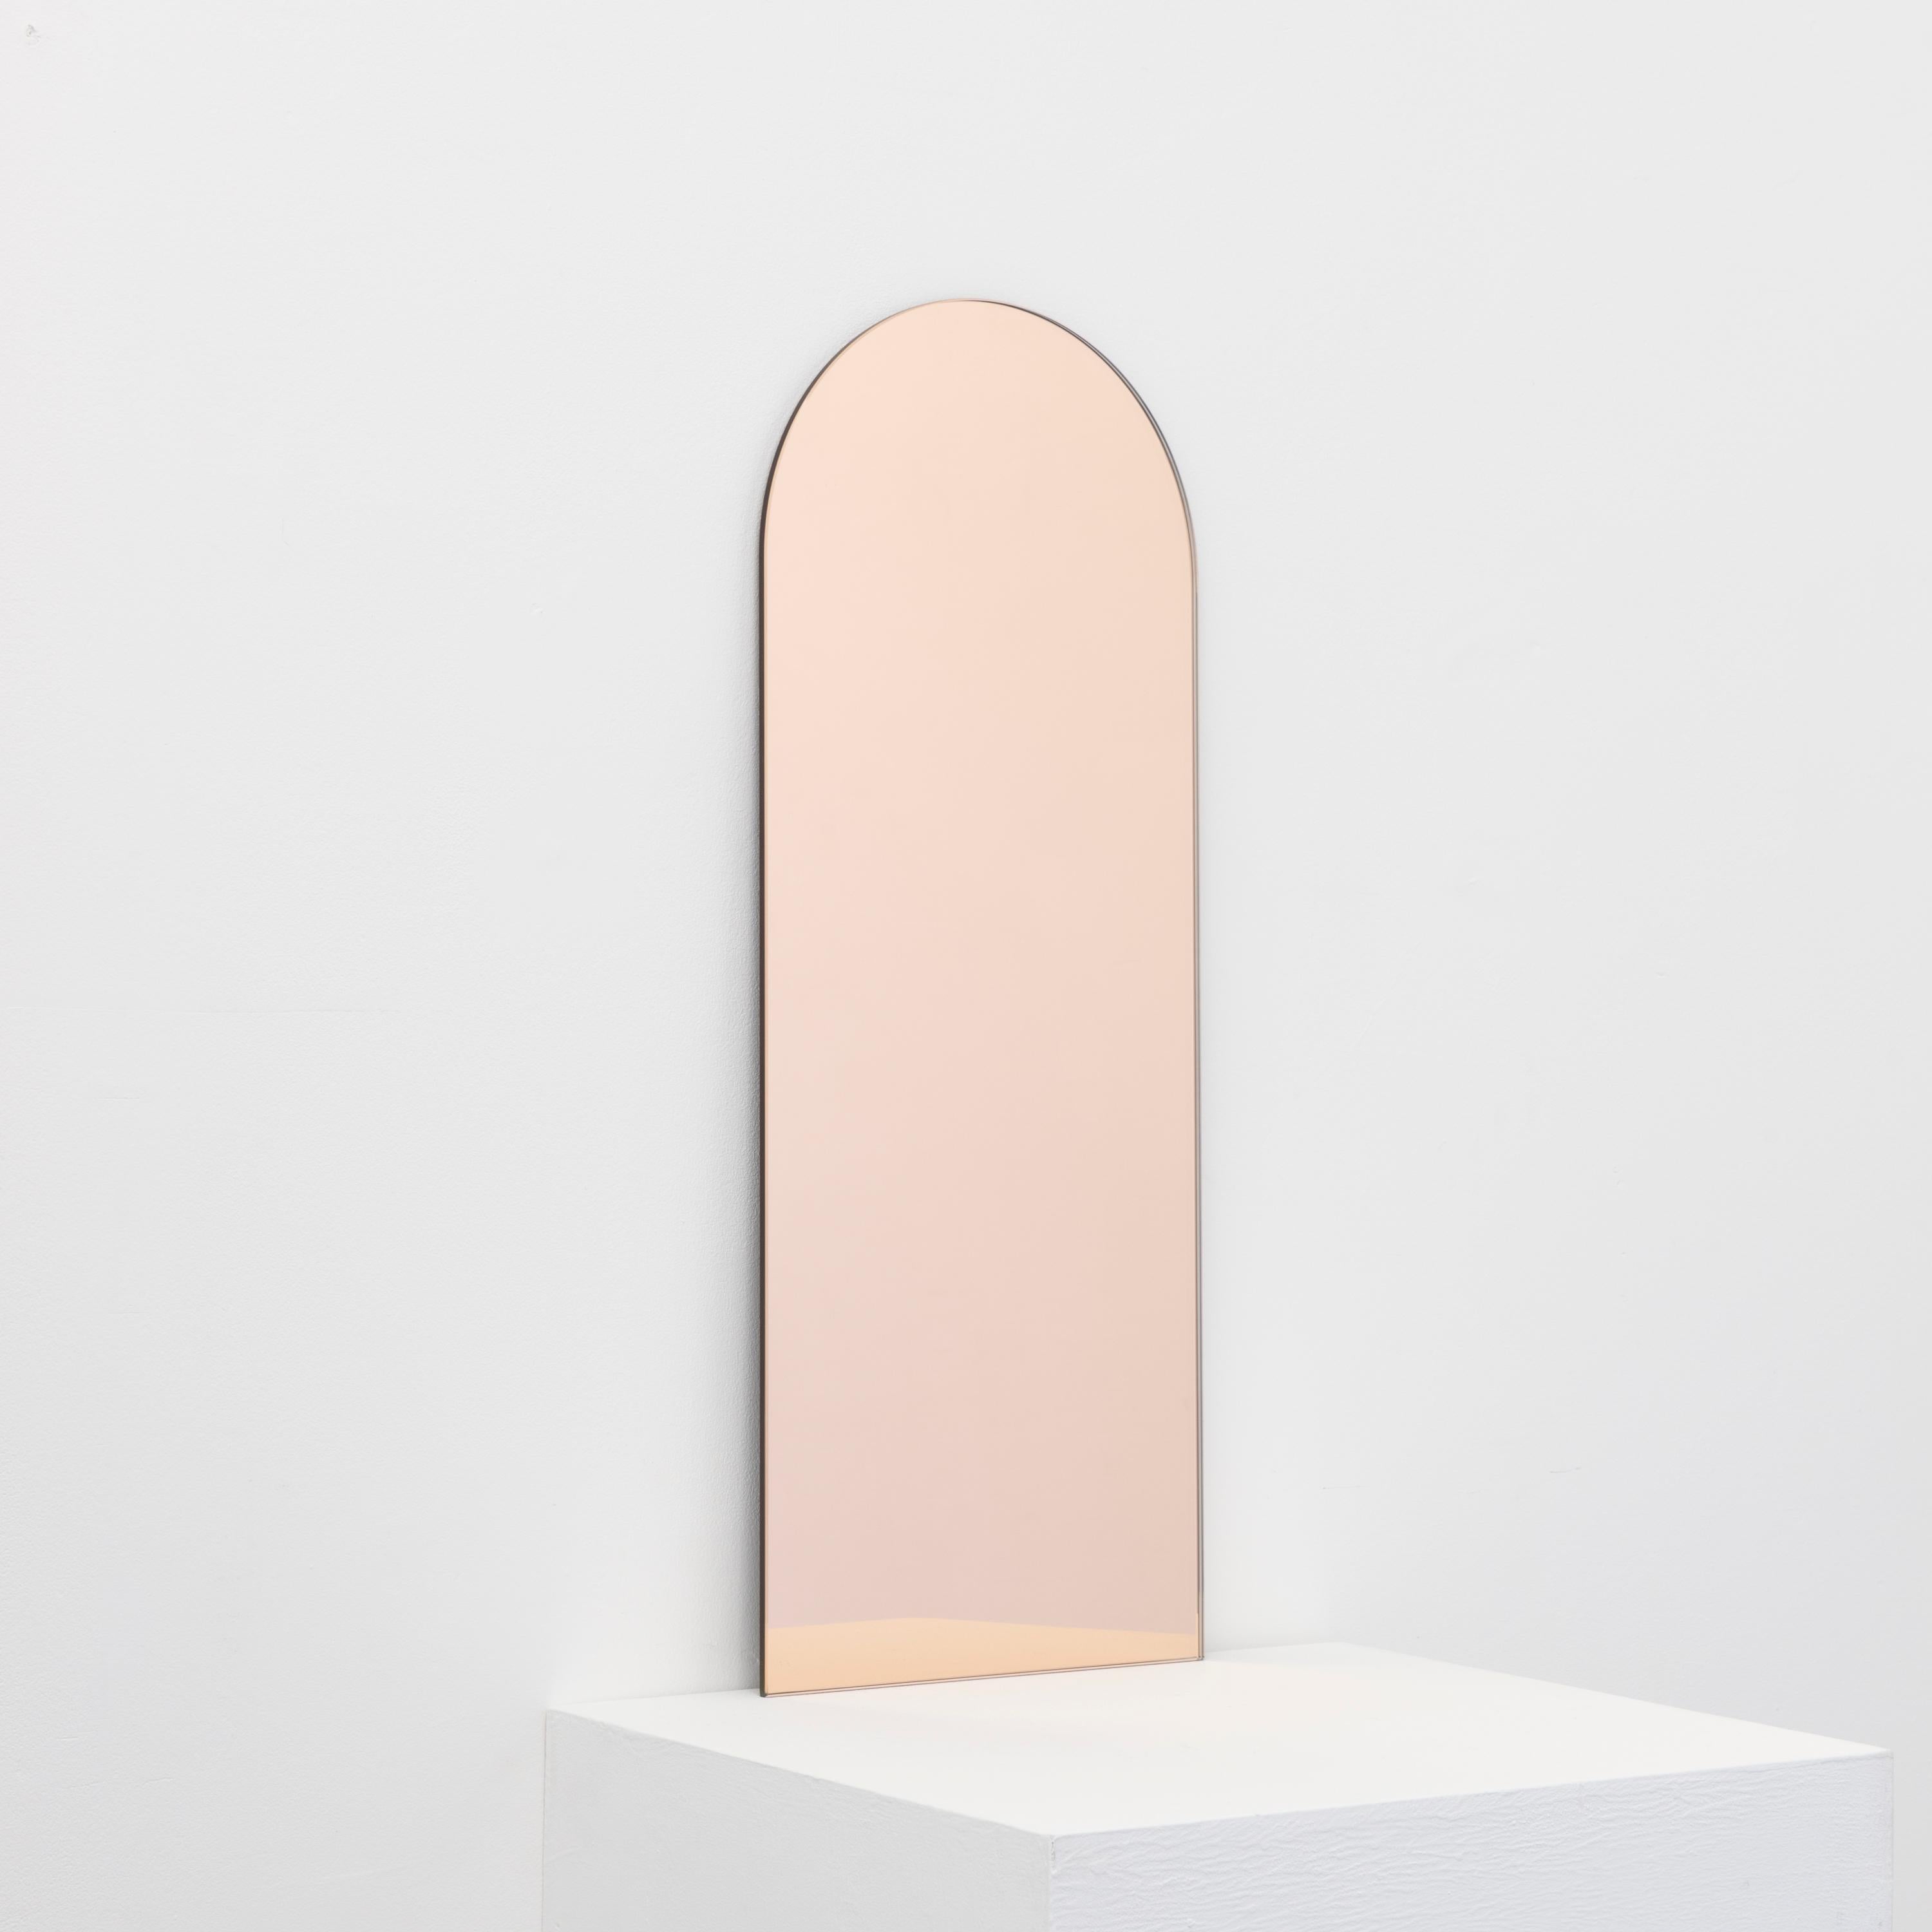 Miroir minimaliste en forme d'arche, sans cadre, teinté d'or rose, avec un effet flottant. Un design de qualité qui garantit que le miroir est parfaitement parallèle au mur. Conçu et fabriqué à Londres, au Royaume-Uni.

Equipé de plaques